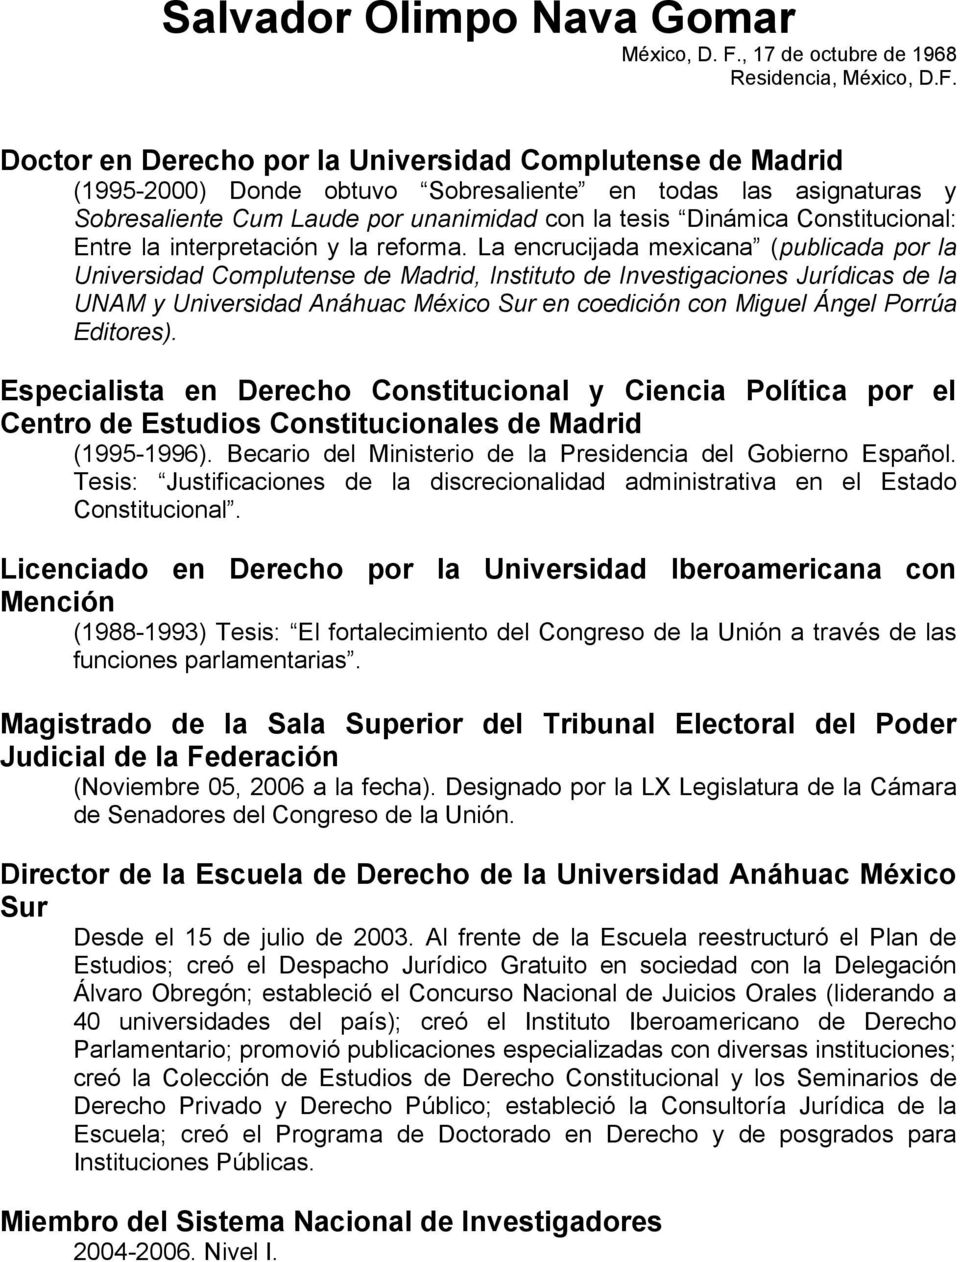 Doctor en Derecho por la Universidad Complutense de Madrid (1995-2000) Donde obtuvo Sobresaliente en todas las asignaturas y Sobresaliente Cum Laude por unanimidad con la tesis Dinámica